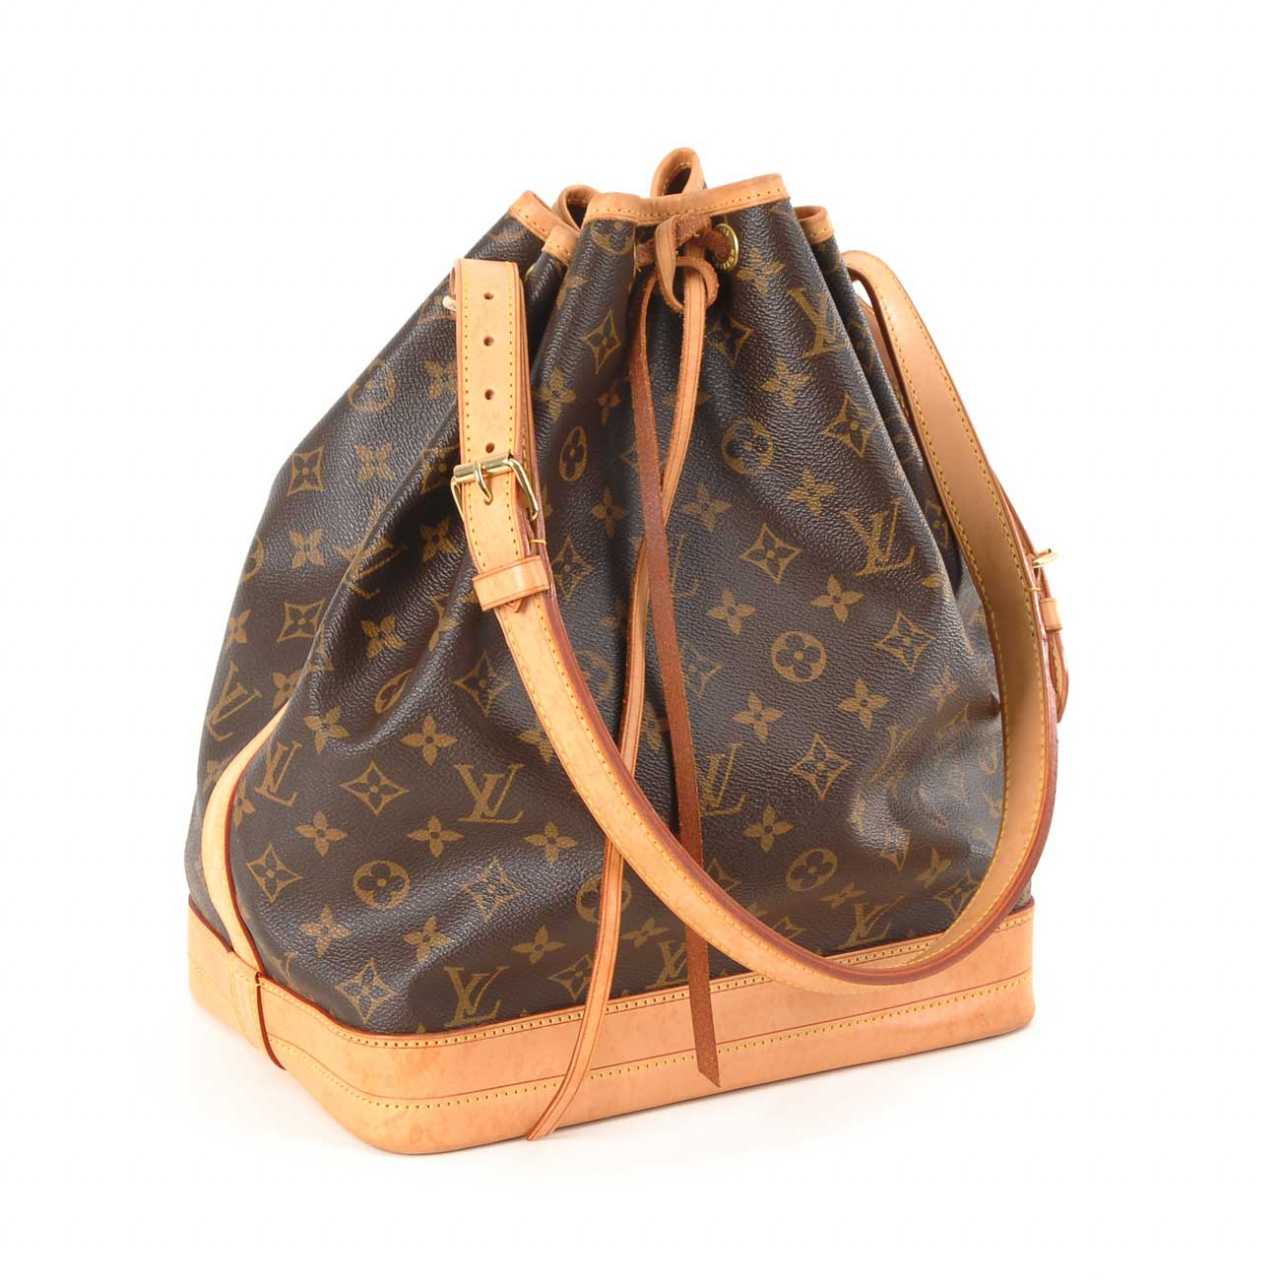 Auktion: Louis Vuitton: Tasche Noah Groß. — online kaufen bei www.neverfullmm.com ...